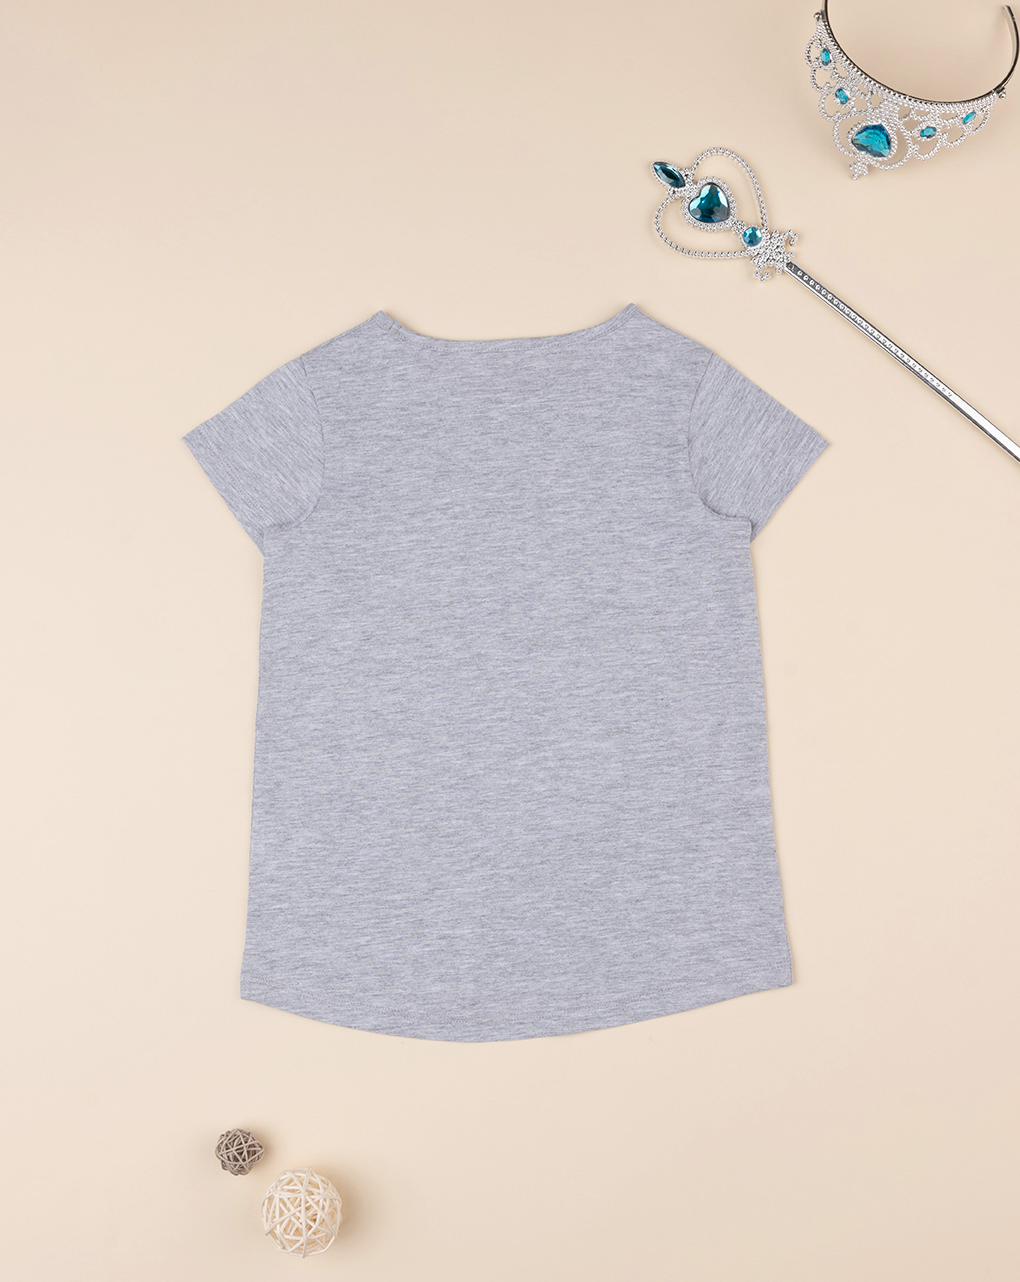 παιδικό t-shirt γκρι με μονόκερο για κορίτσι - Prénatal